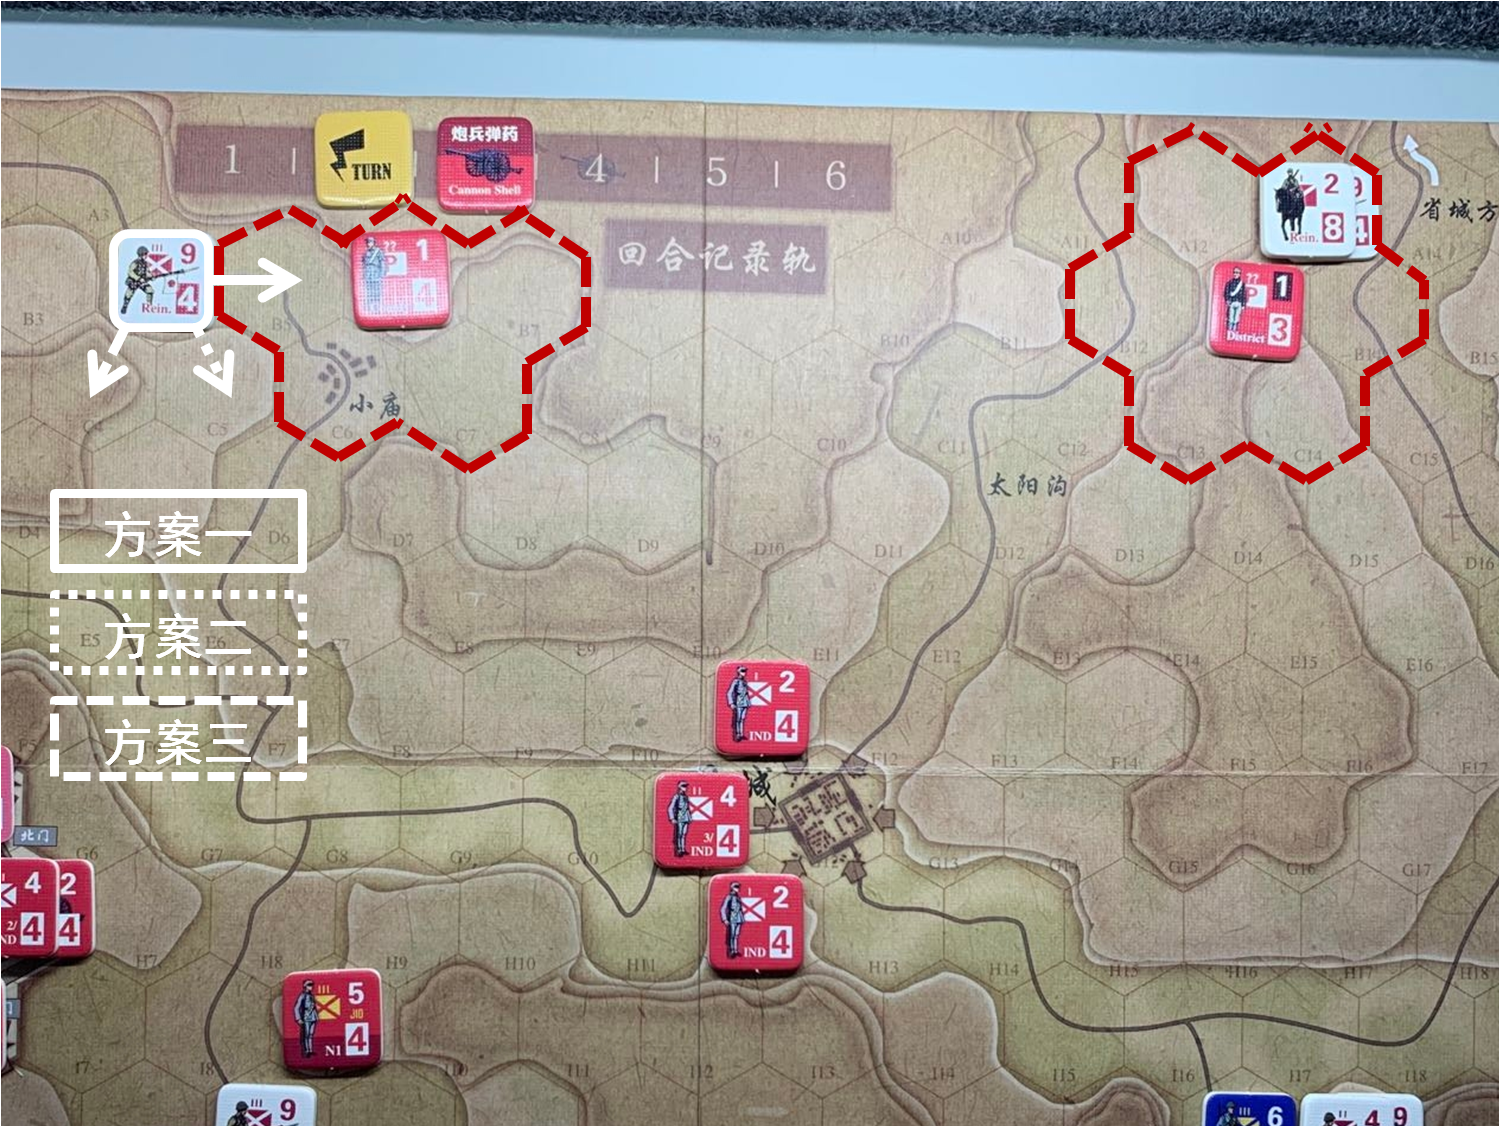 第二回合共军游击部队对于移动命令3的执行计划与结果，及对应方向日军增援部队在本回合日方移动阶段可能的移动方案